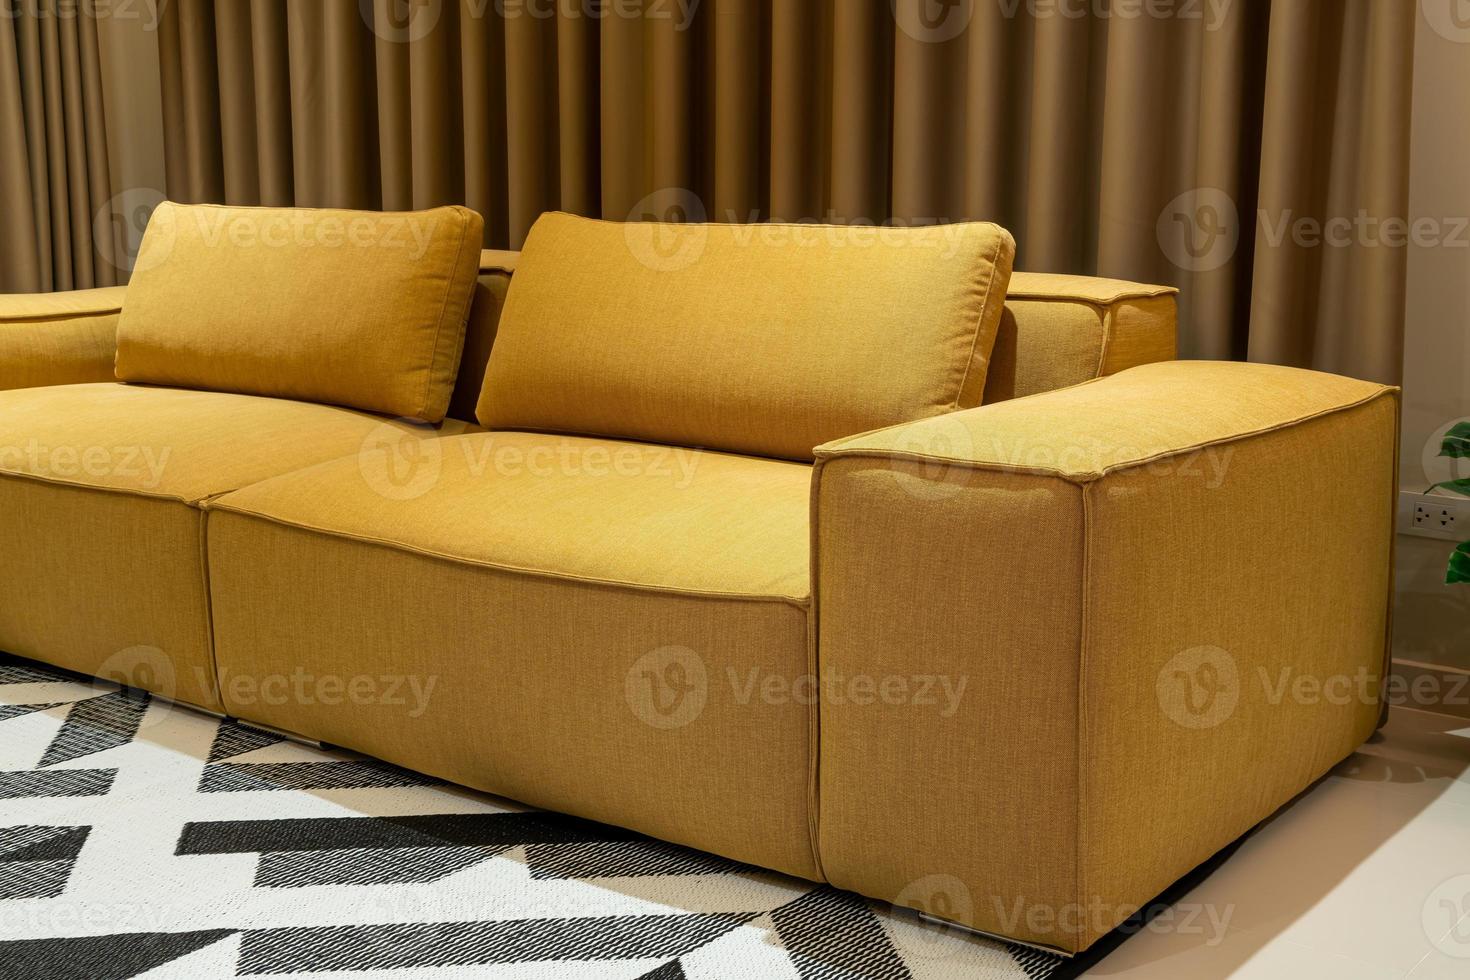 tom gyllene senaps soffa i vardagsrummet foto